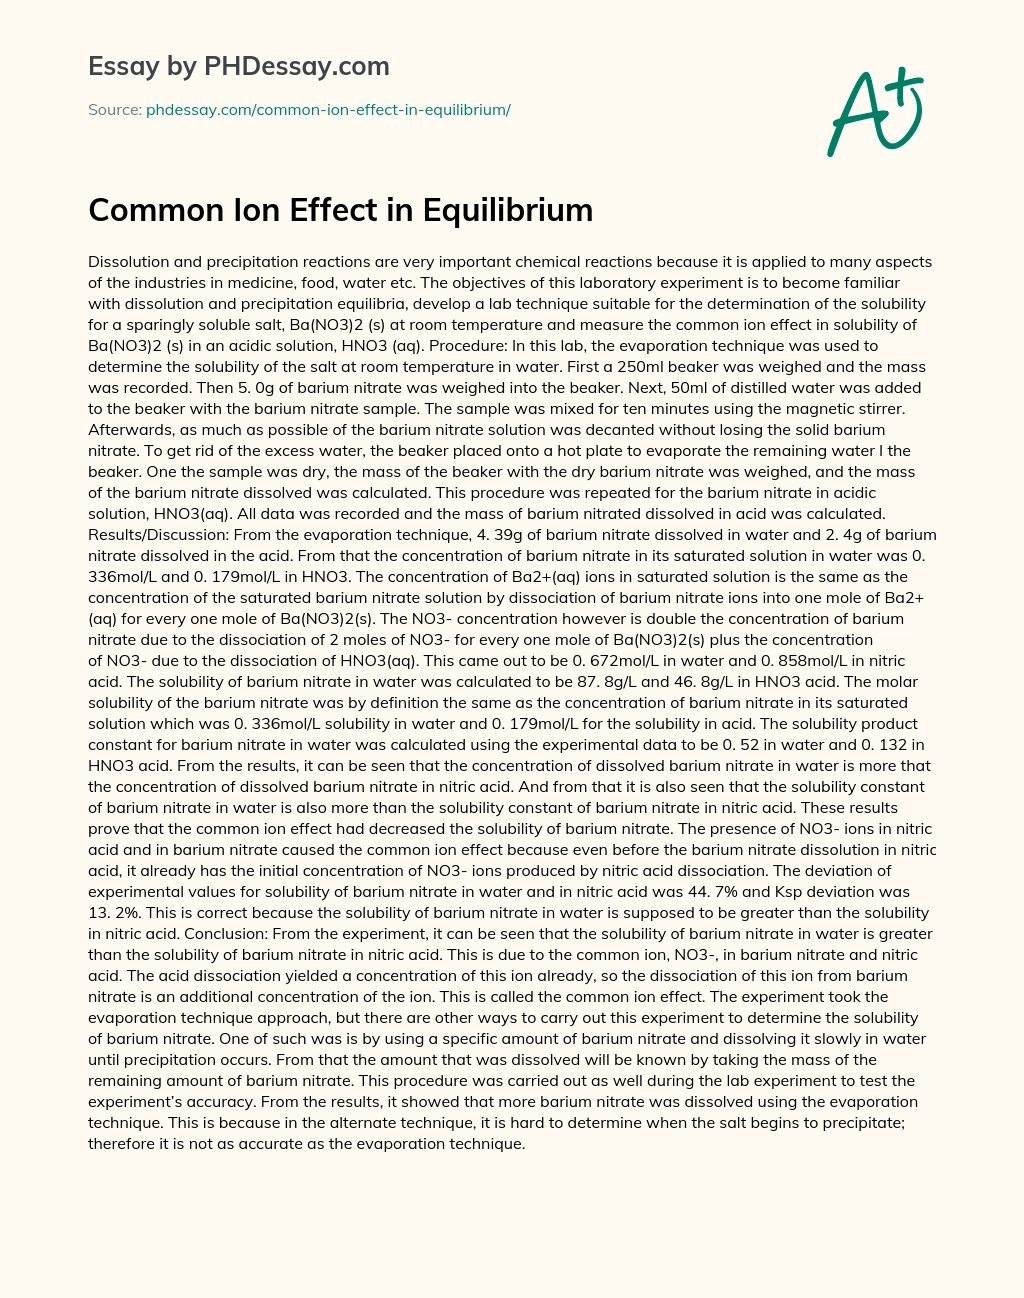 Common Ion Effect in Equilibrium essay